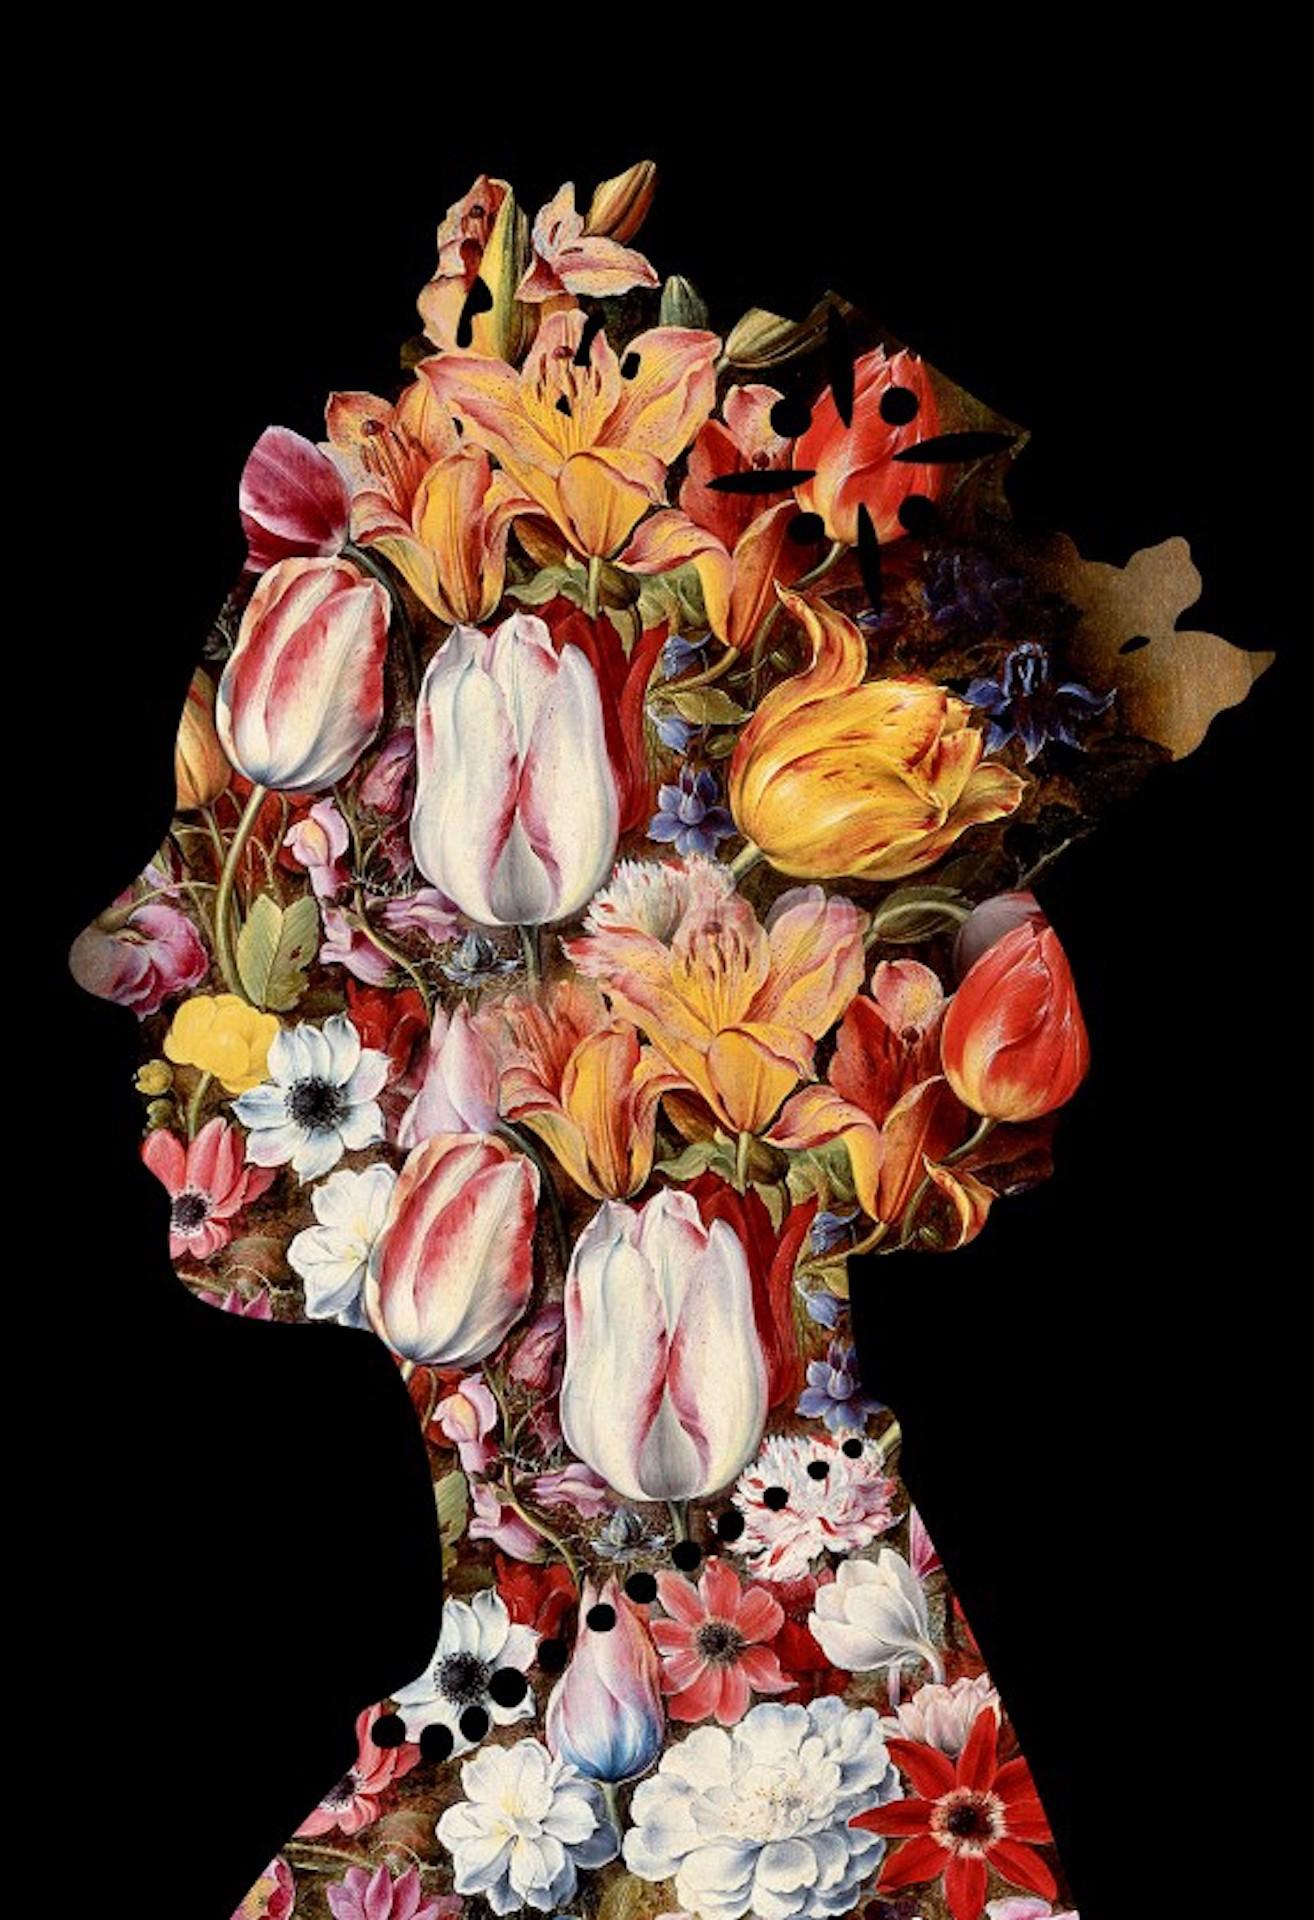 Une reine (2), Art floral contemporain, Reine Elizabeth II, impressions numériques